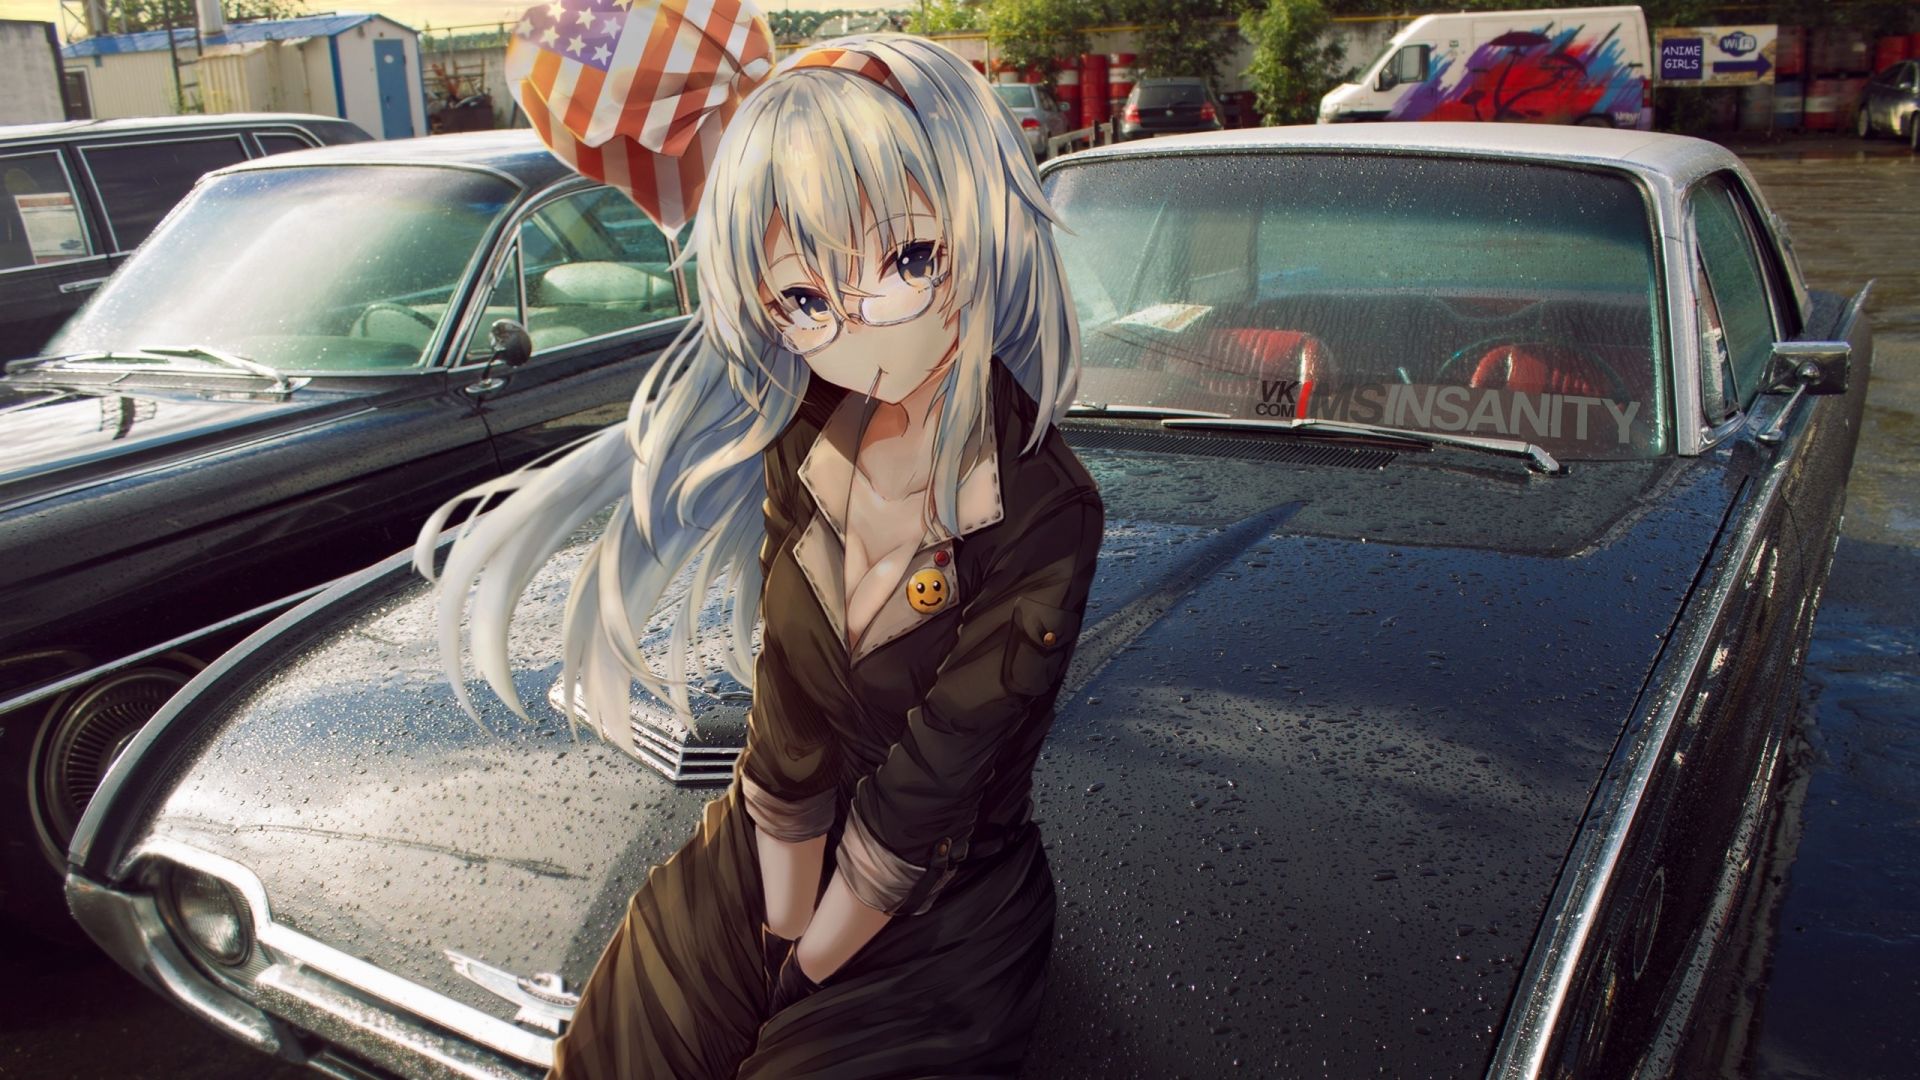 Wallpaper Sitting on car, anime girl, white hair